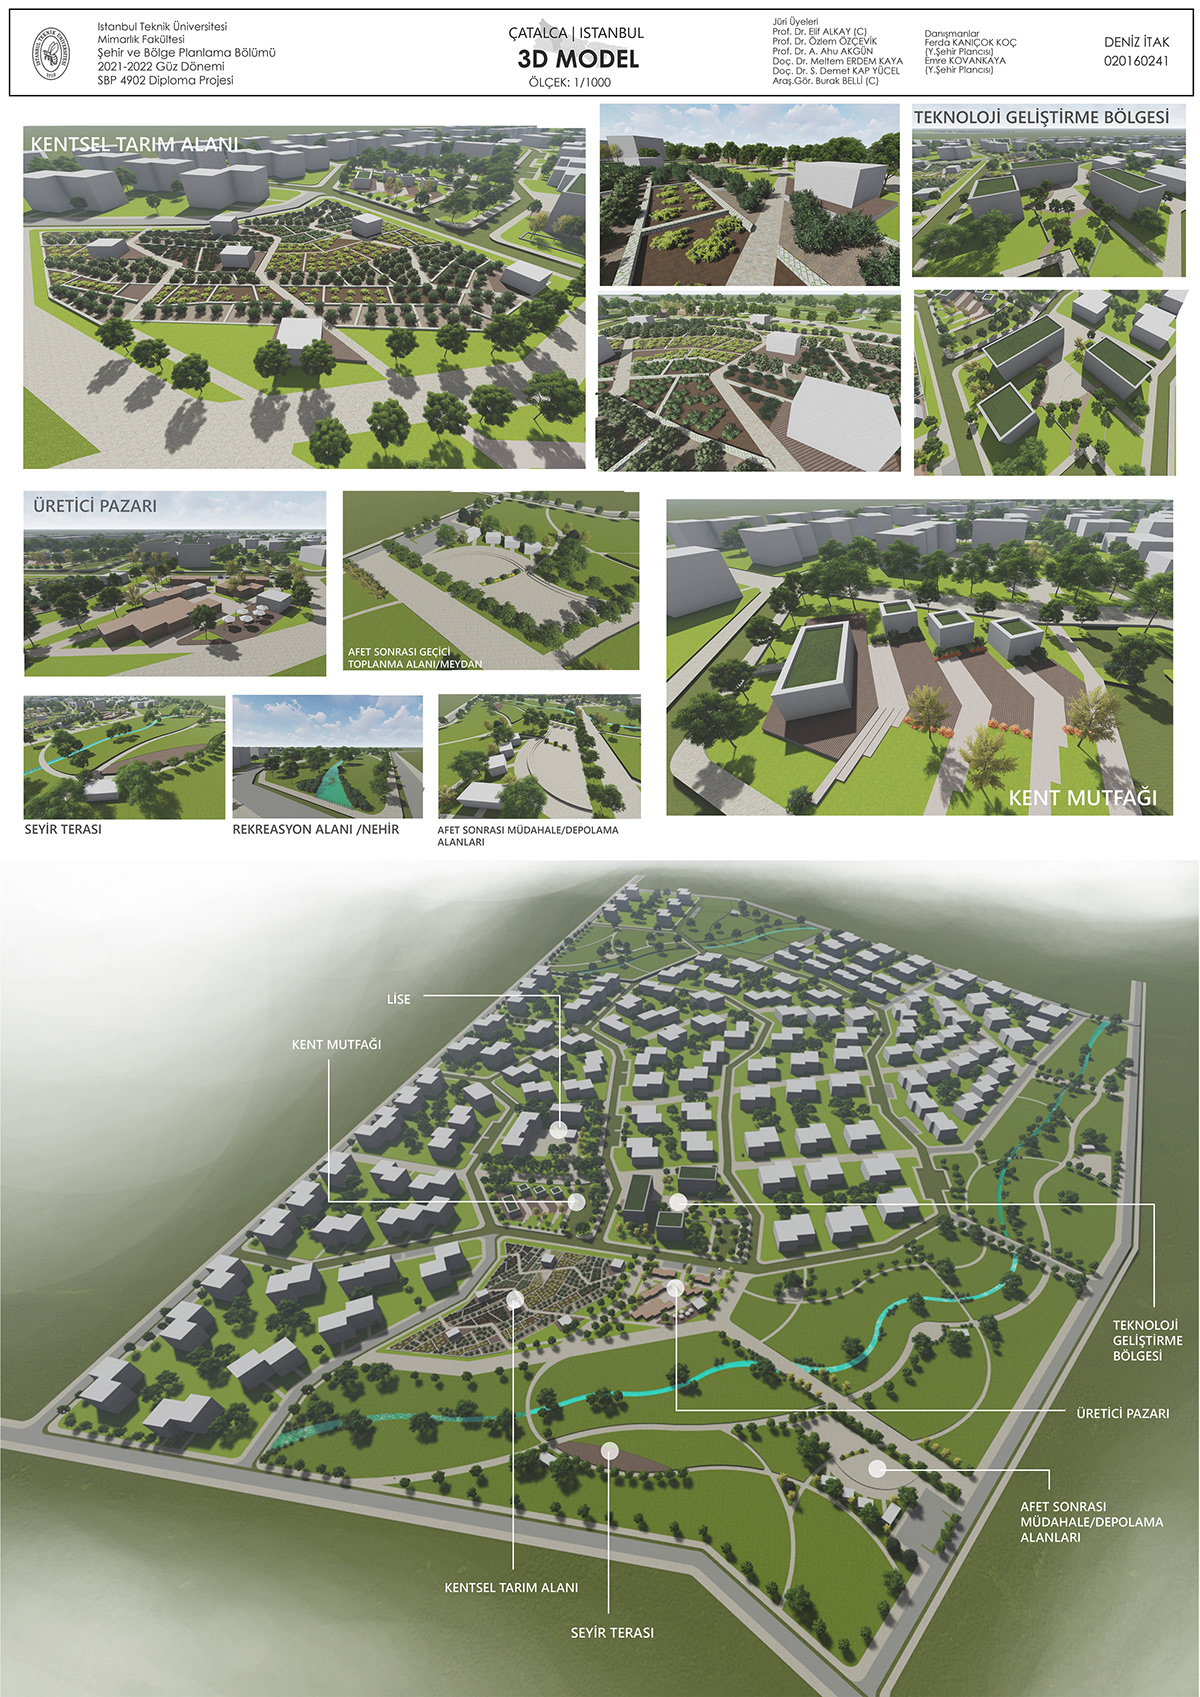 3D architecture city planning Render Urban Urban Design urban planning urbanism   visualization